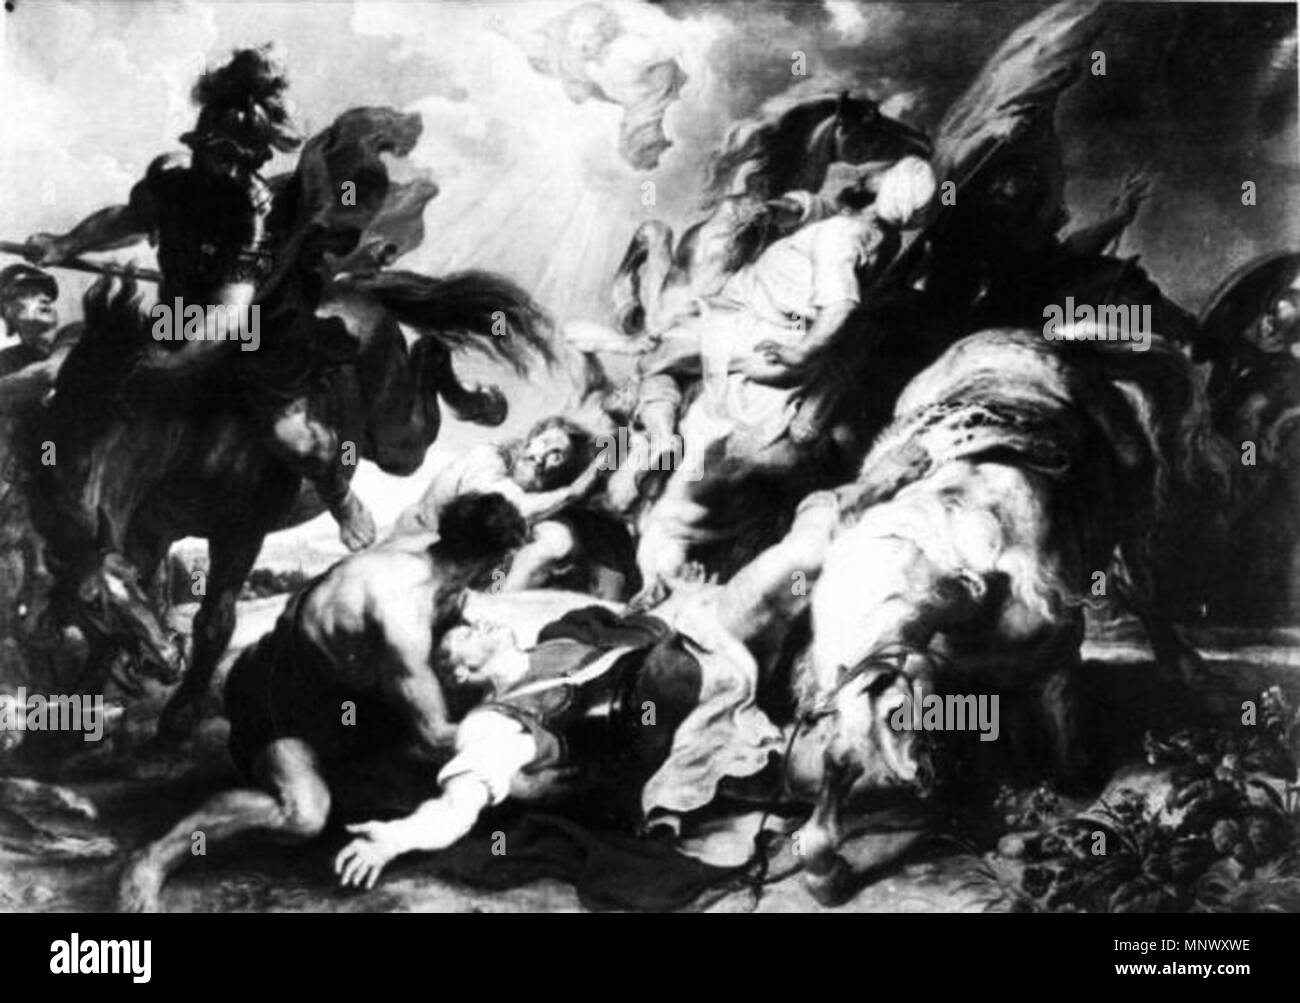 Anglais : La Conversion de Saint Paul. Polski : Nawrócenie św. Pawła. Années 1620. Rubens 1076 Conversion de Saint Paul Banque D'Images